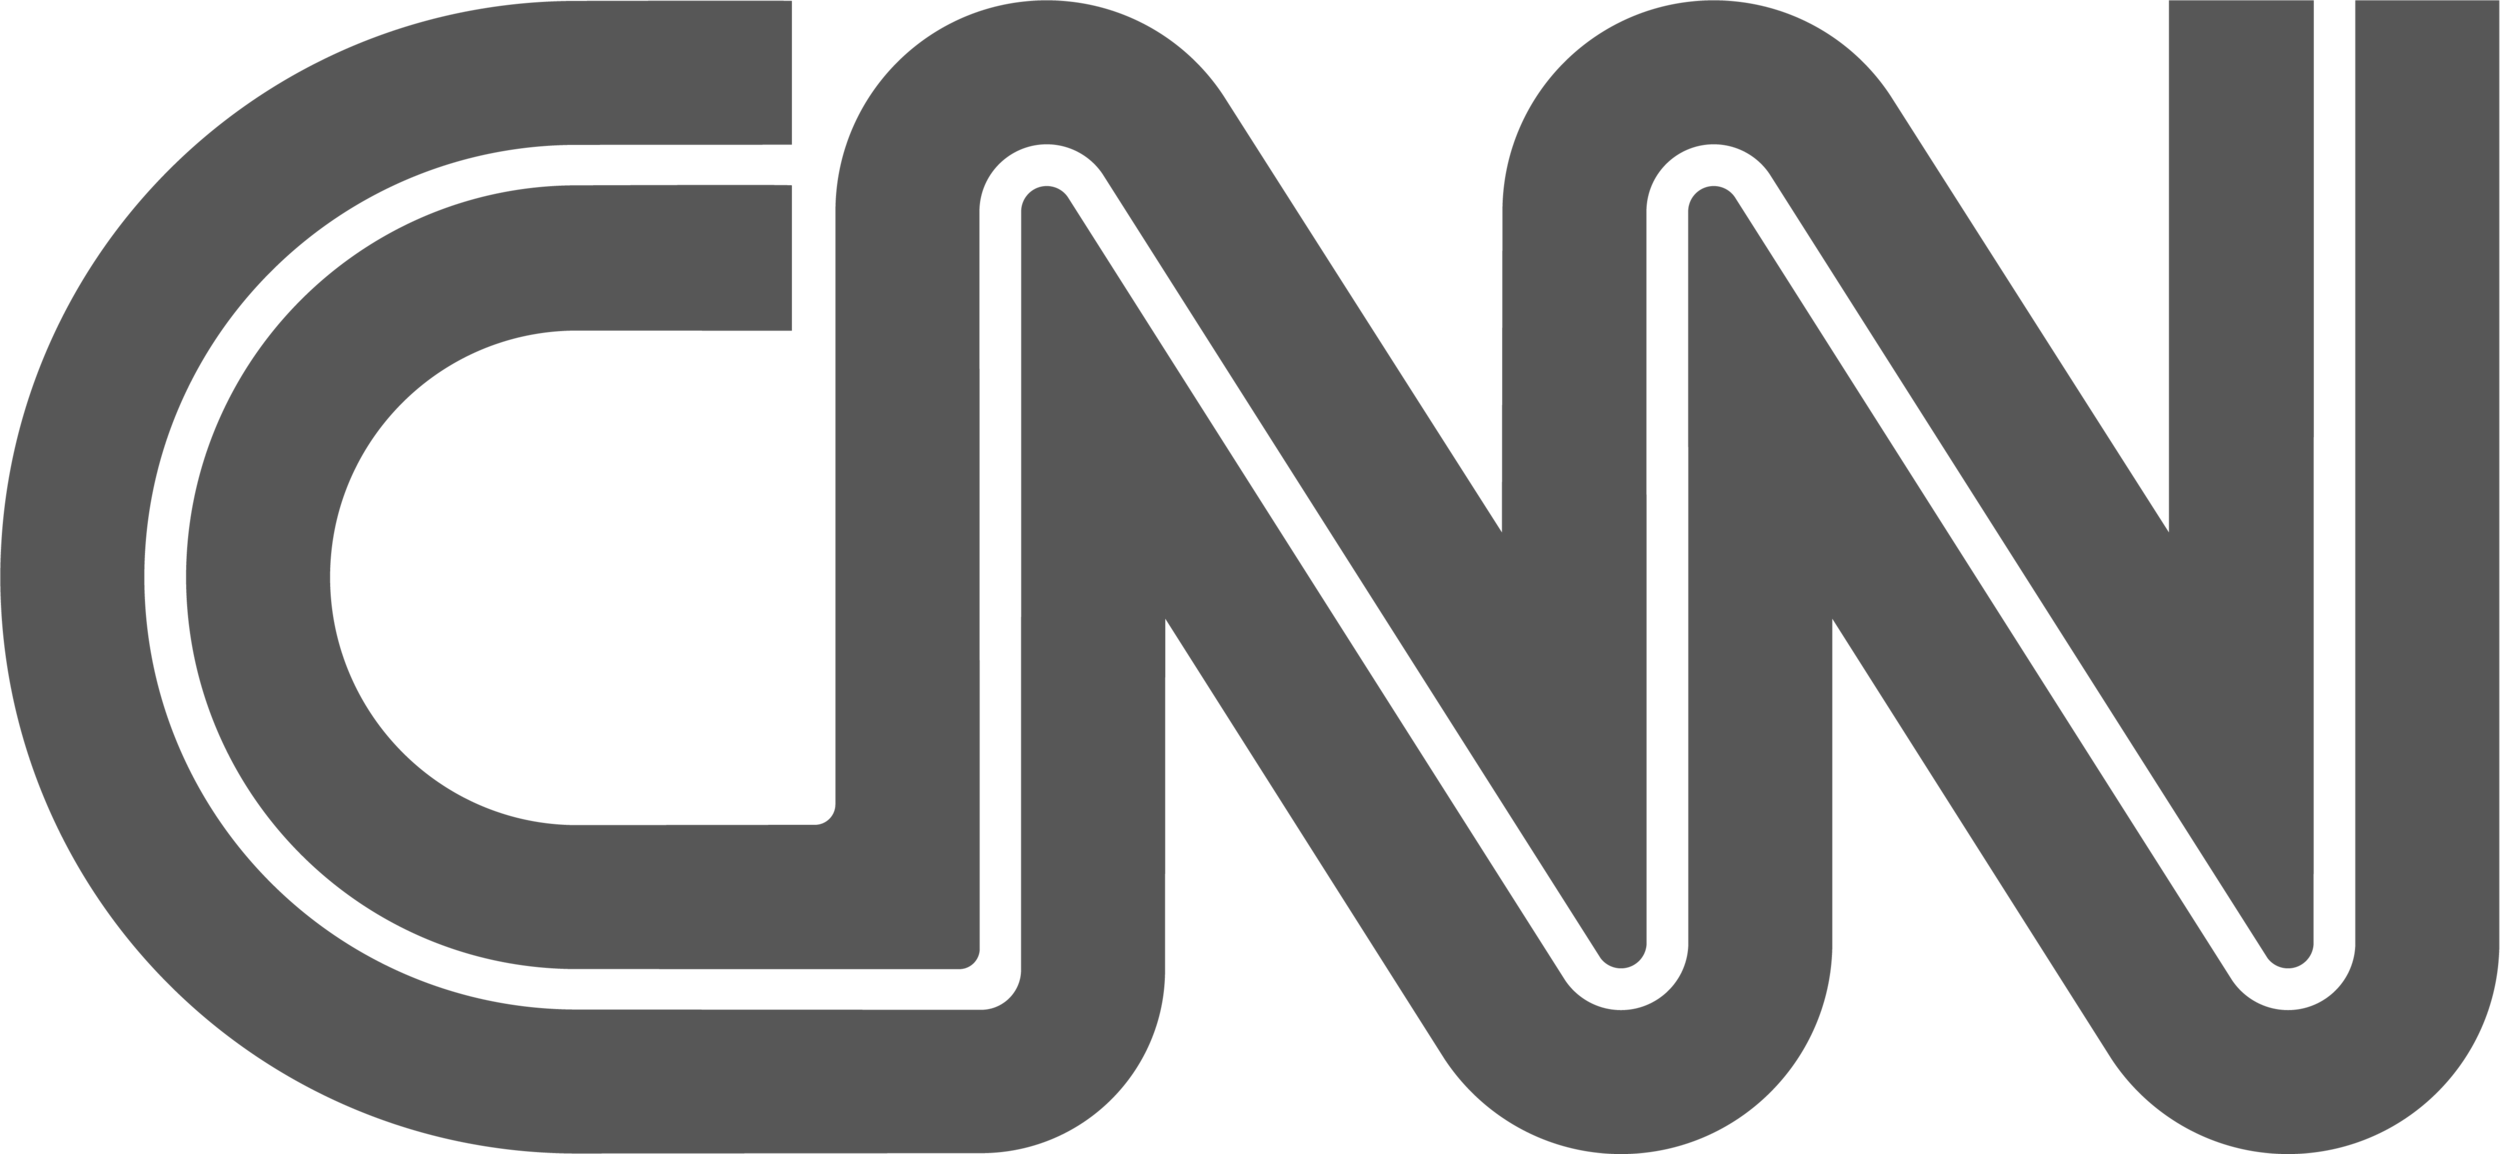 cnn-logo-01.png